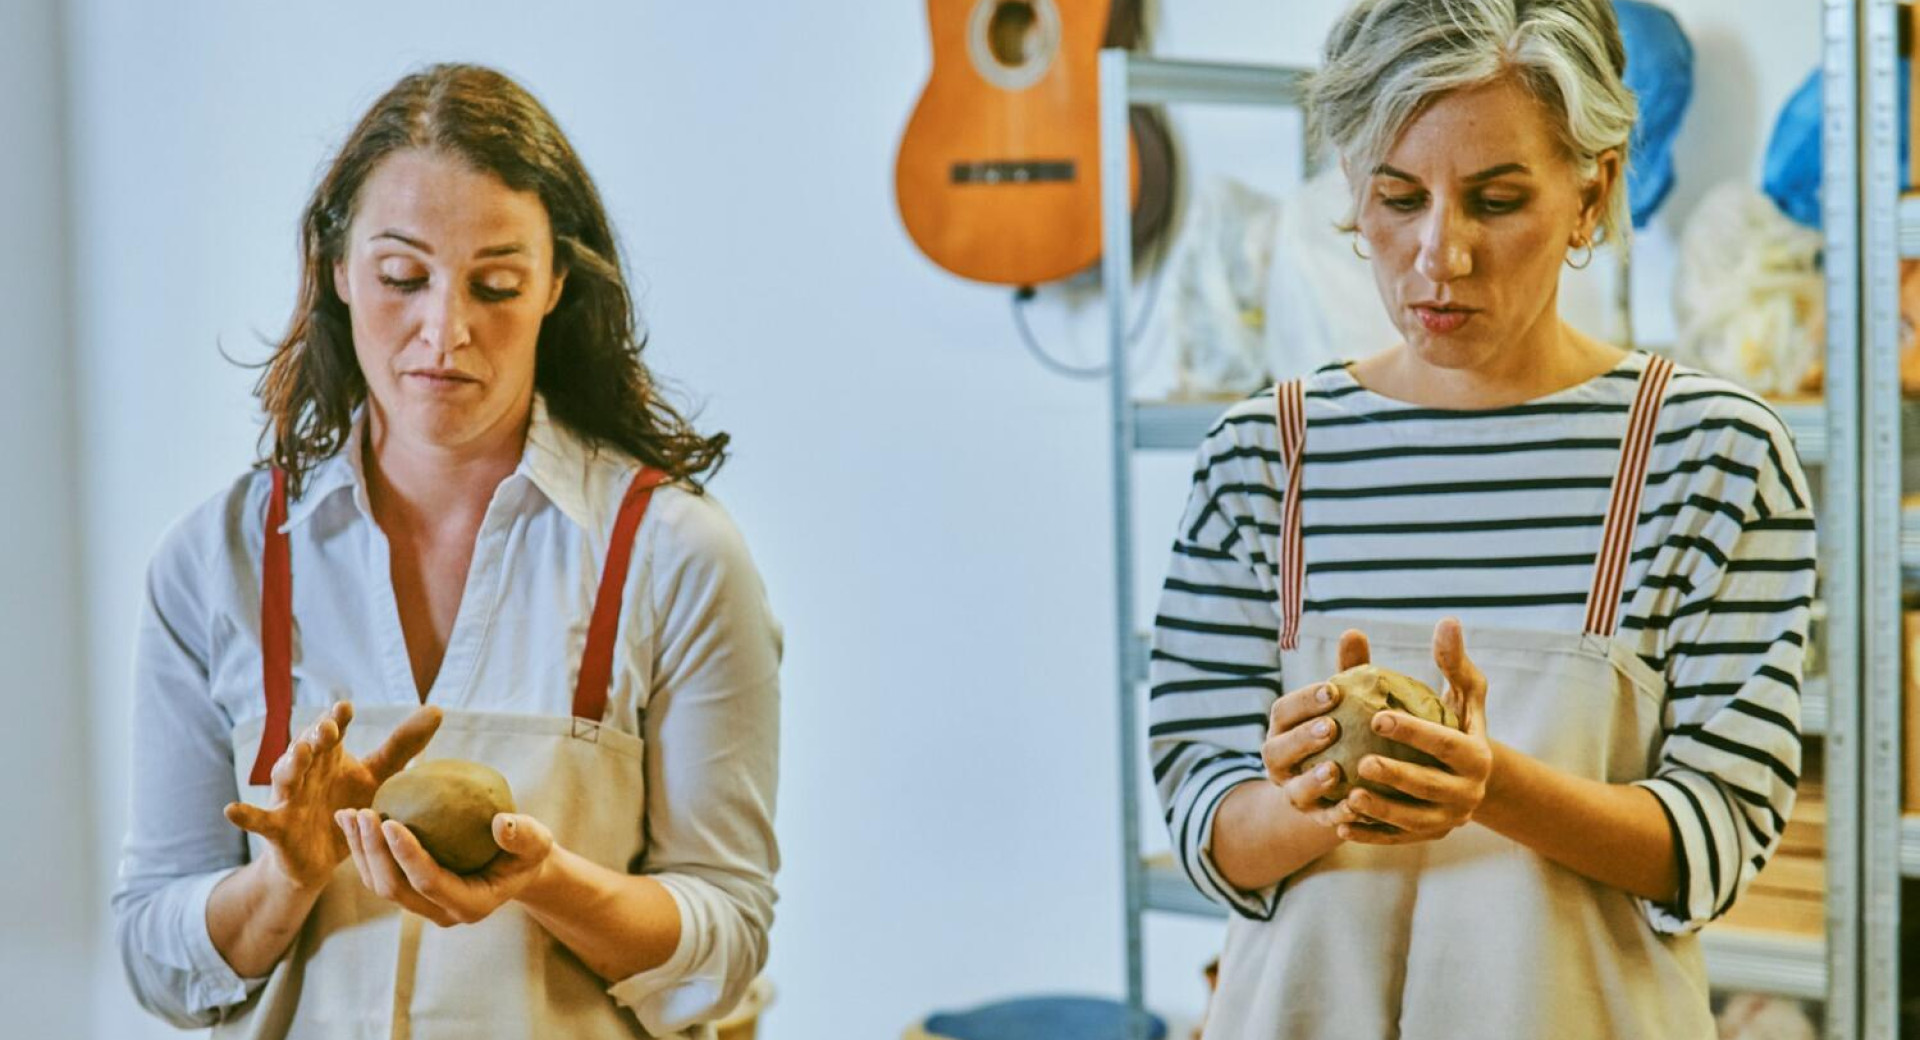 Doživetje tradicije lončarstva v Ljubljani – delavnica Odprto vreteno; ženski držita v roki glino